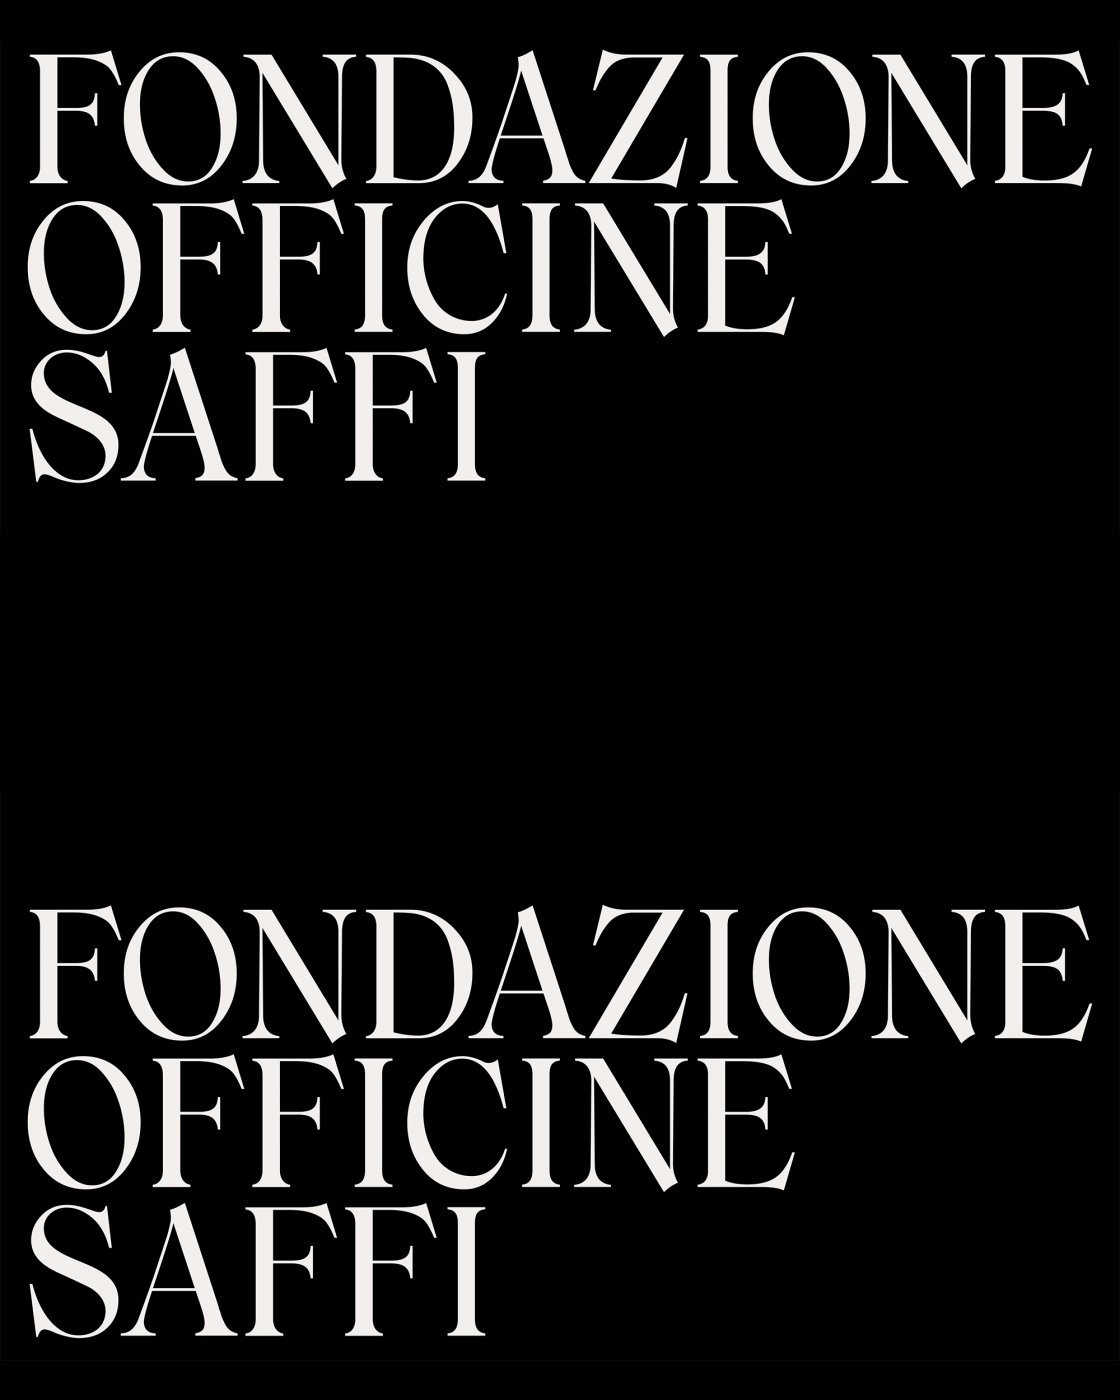 Fondazione_Officine_Saffi_Loghi.jpg